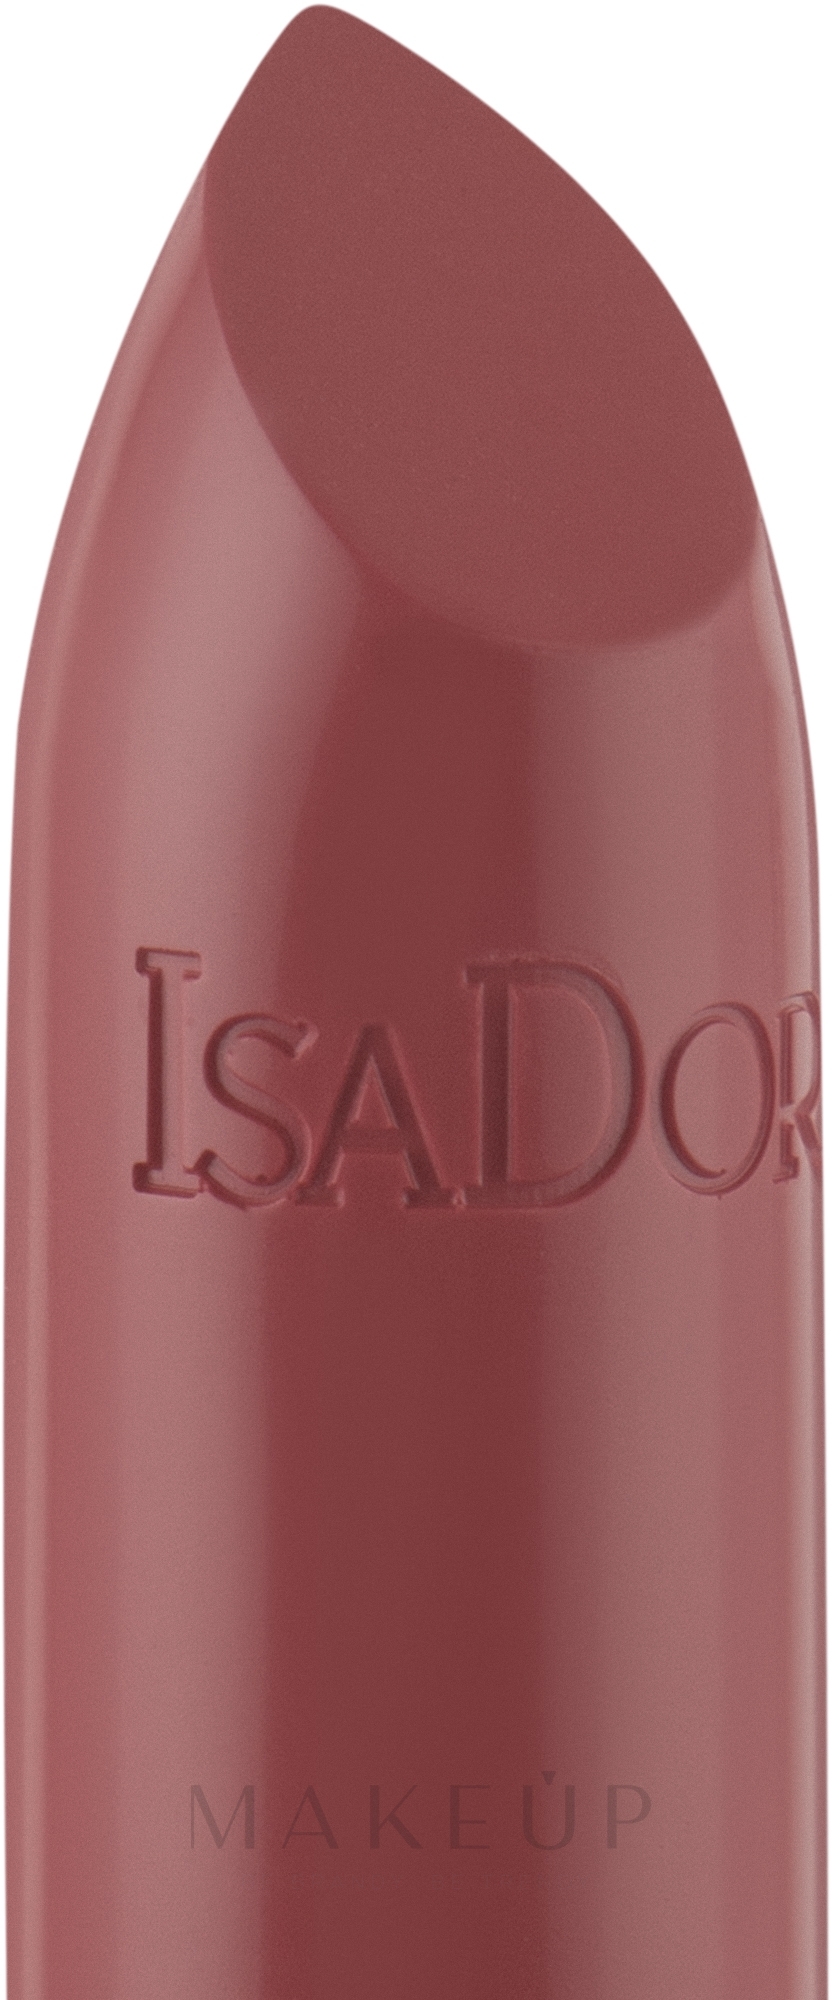 Feuchtigkeitsspendender Lippenstift - IsaDora Perfect Moisture Lipstick — Foto 11 - True Blush